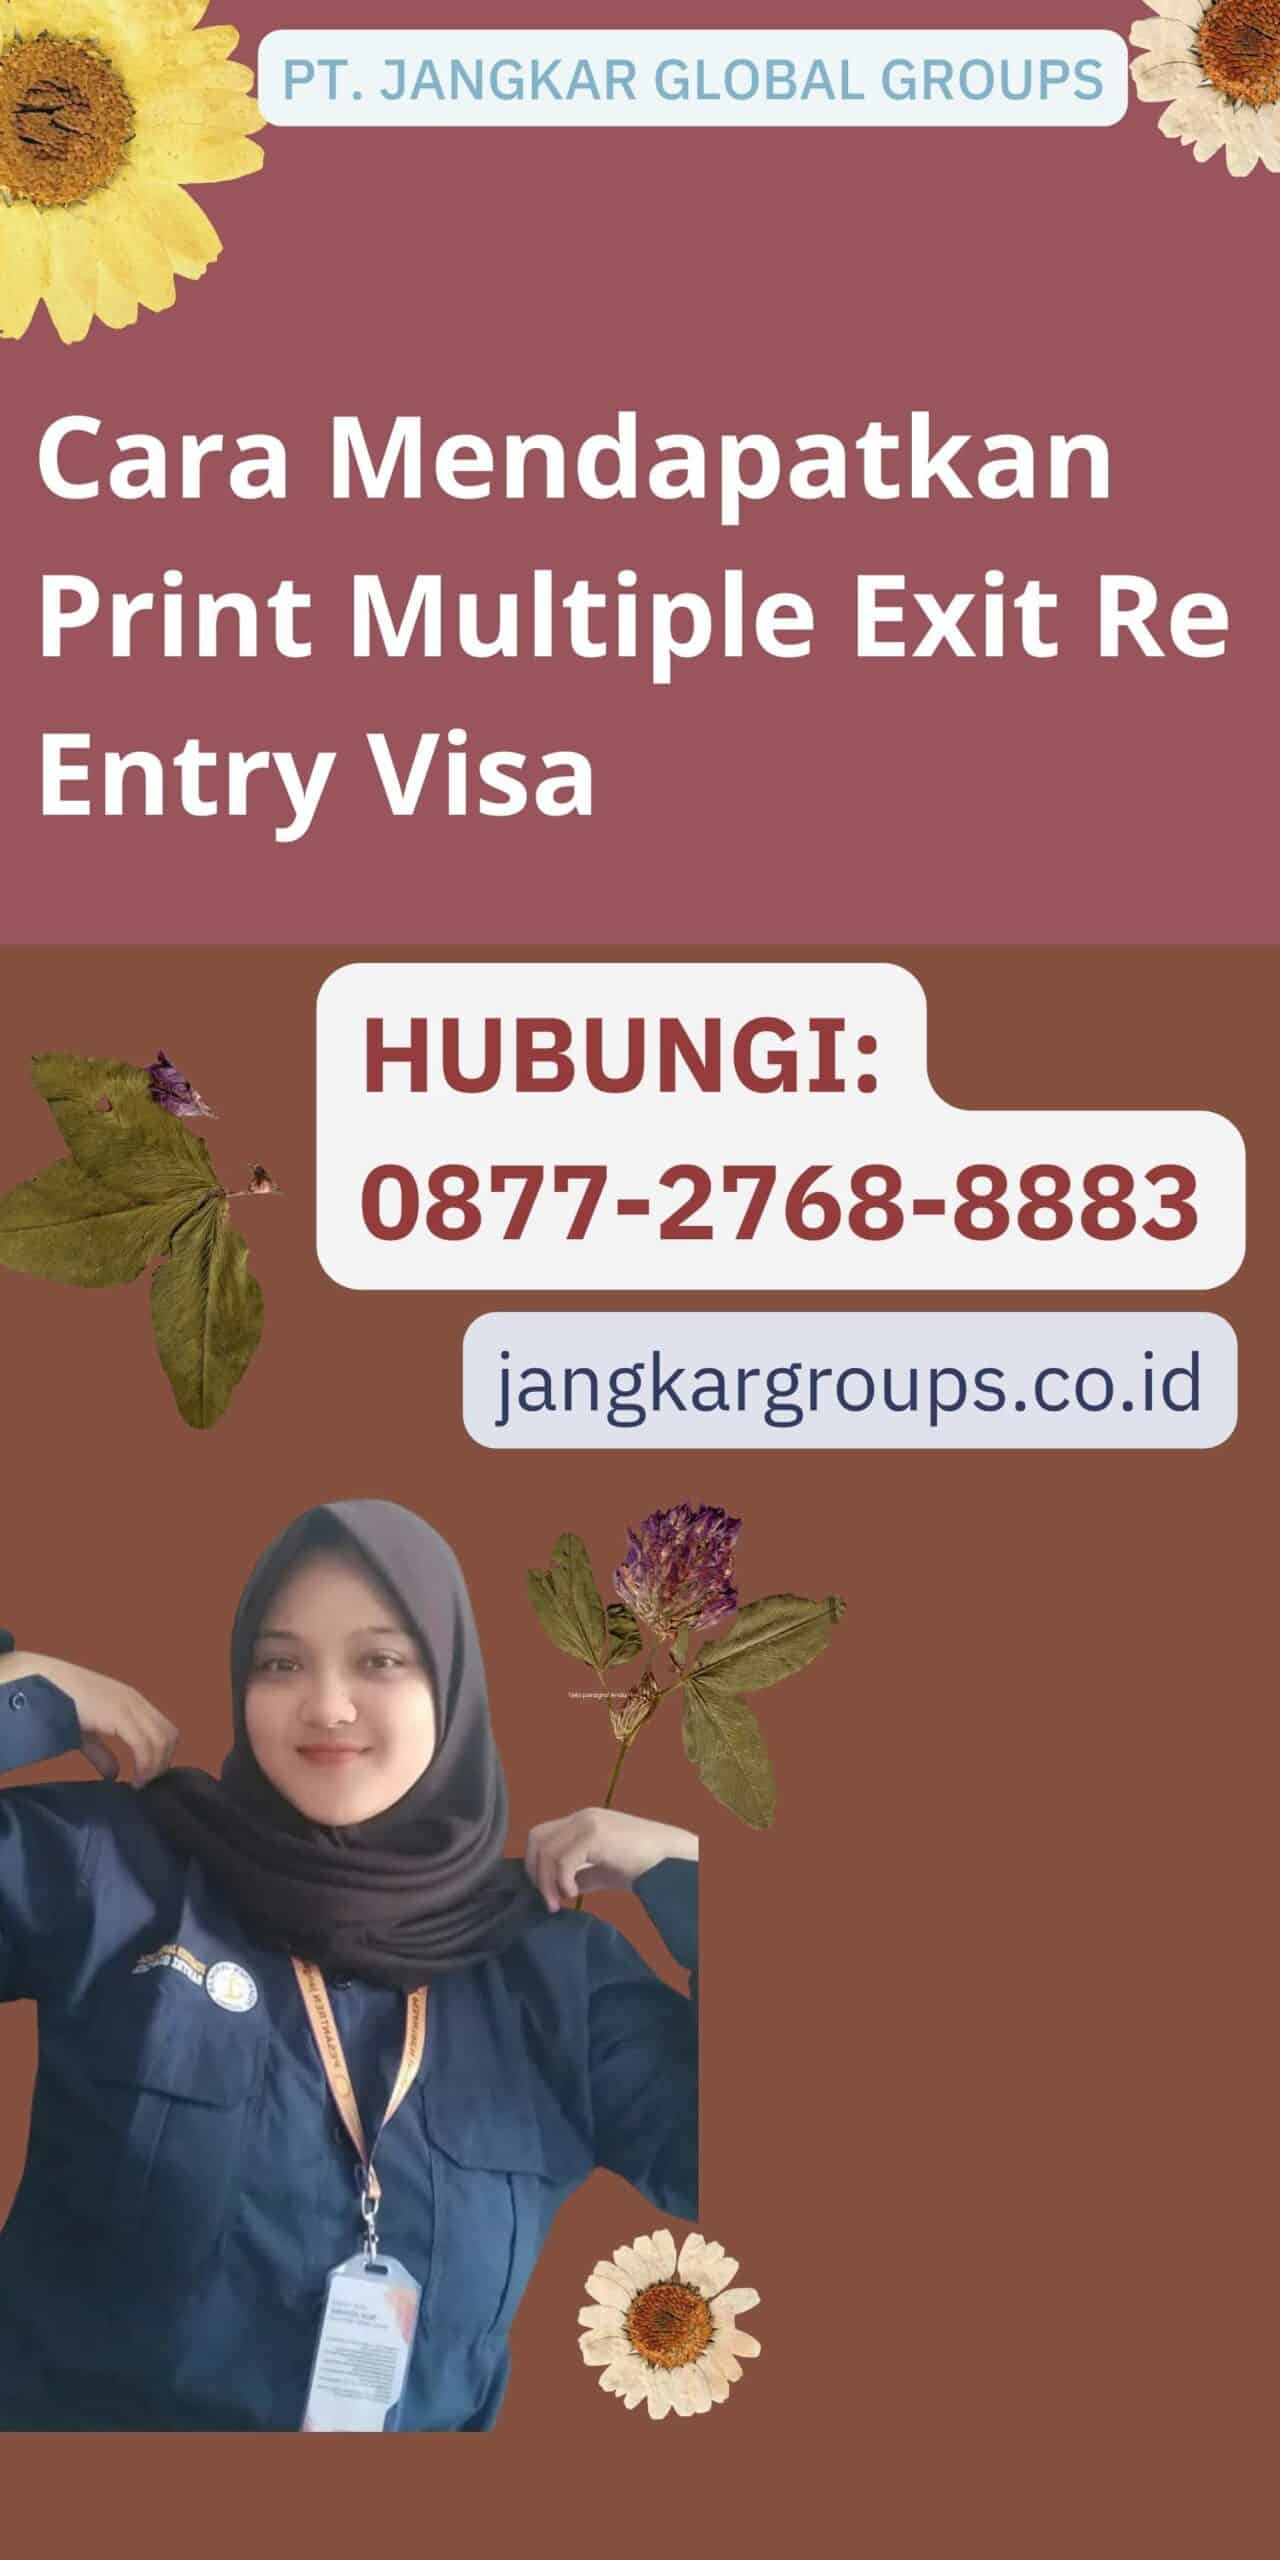 Cara Mendapatkan Print Multiple Exit Re Entry Visa